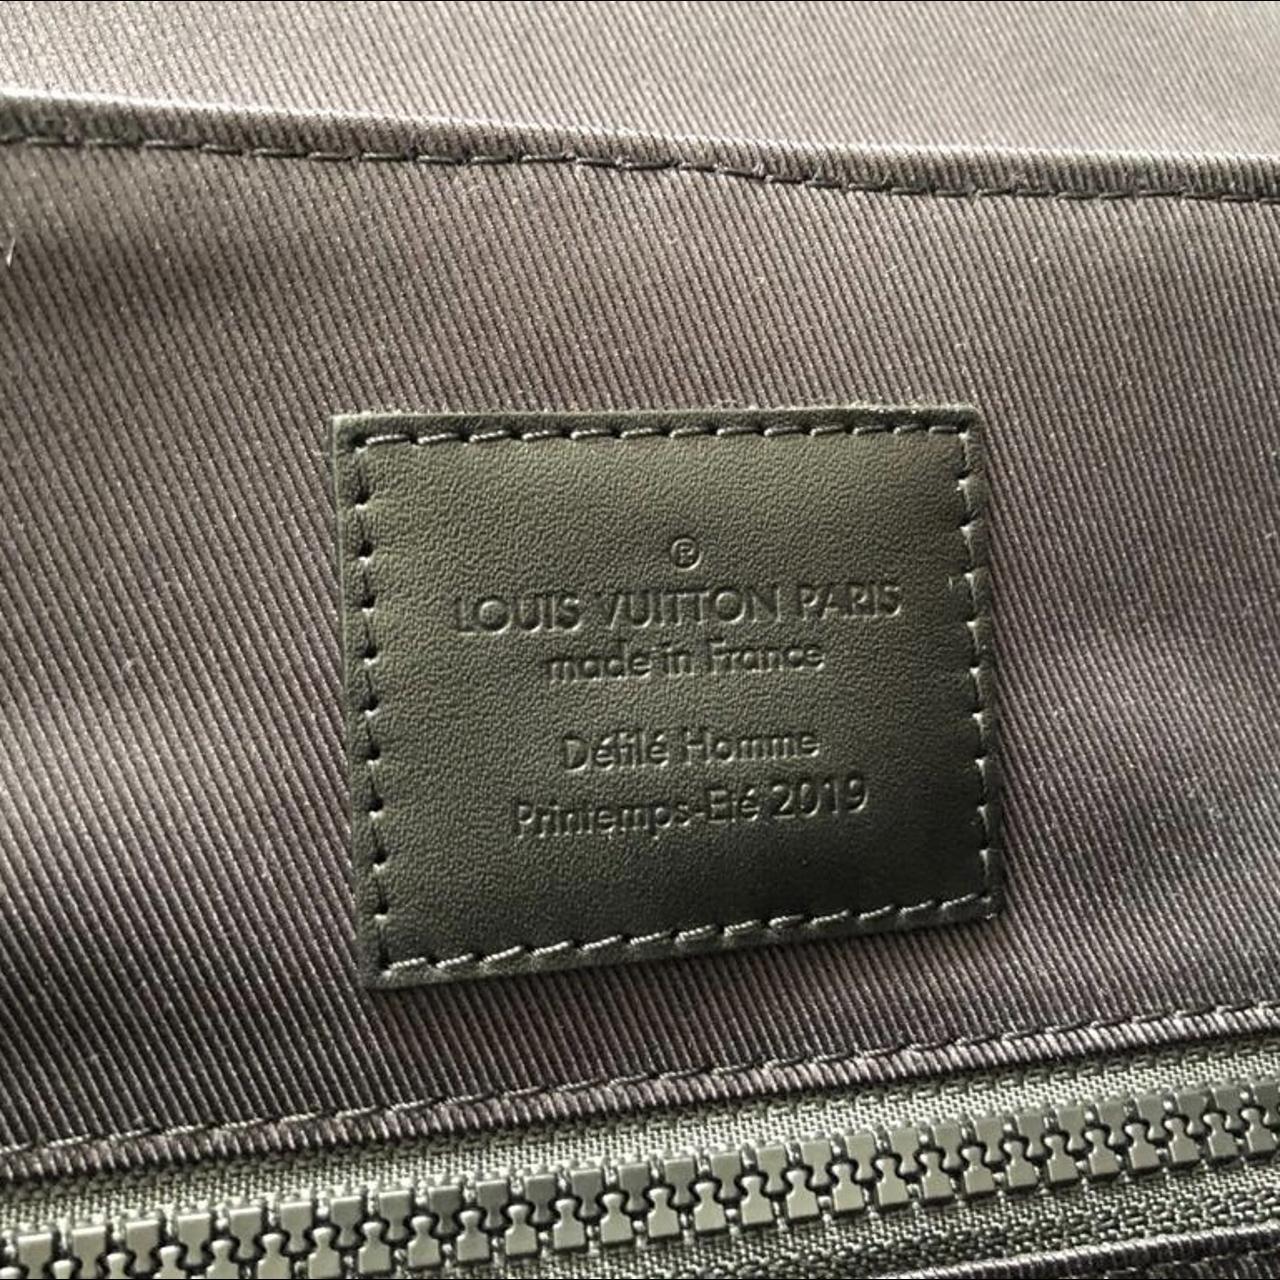 FIND] Louis Vuitton Virgil Abloh Christopher Backpack : r/DesignerReps